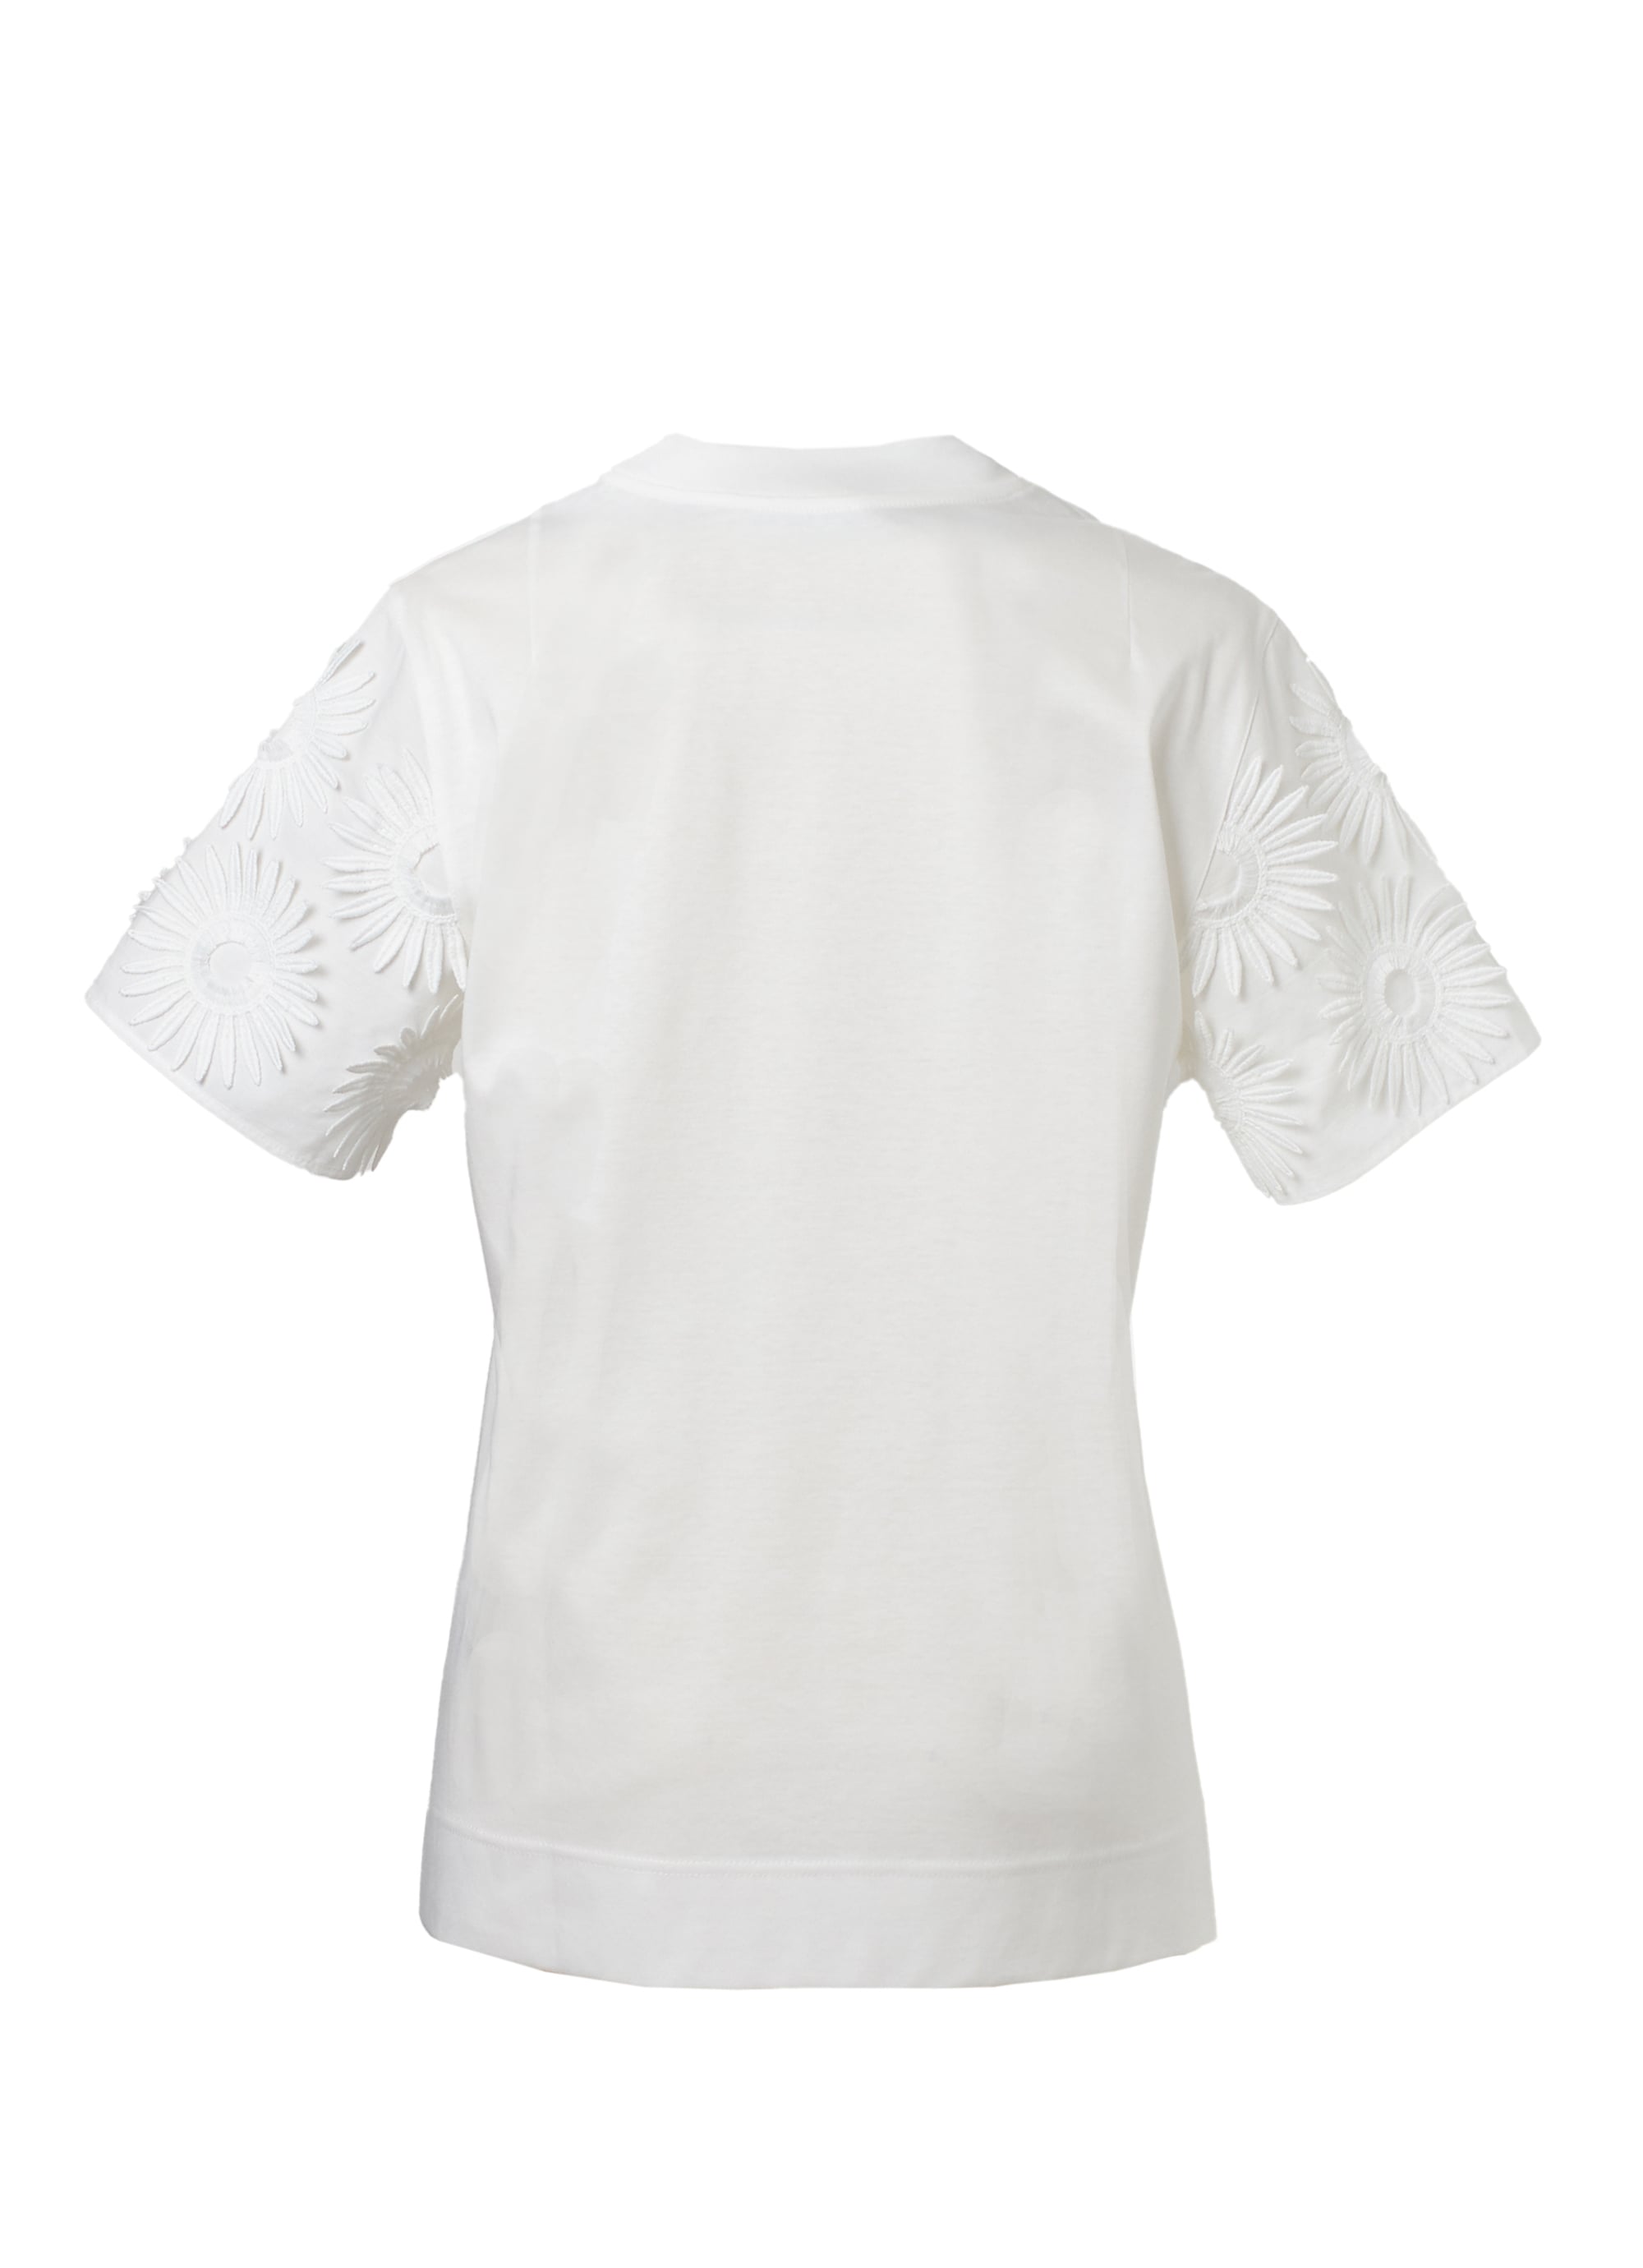 立体フラワーモチーフ Tシャツ 詳細画像 ホワイト 3